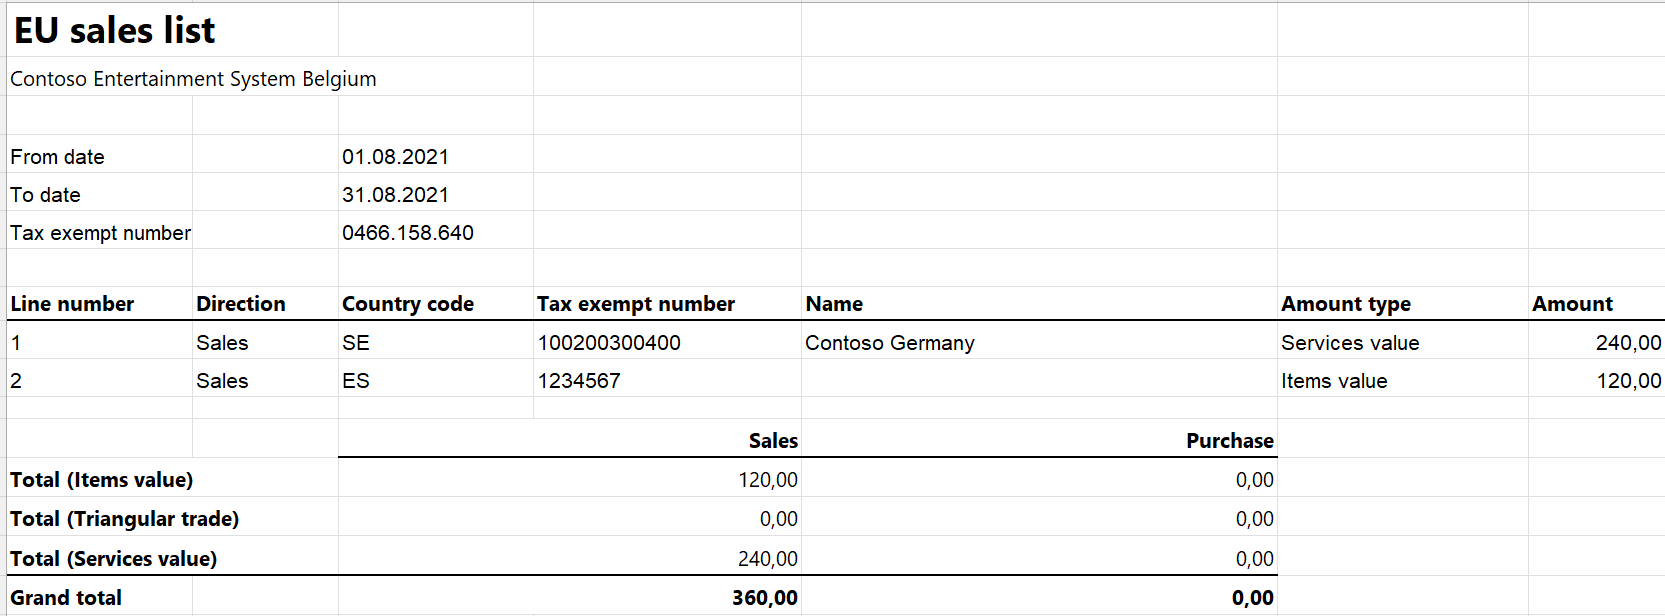 État EUSL généré au format Excel.